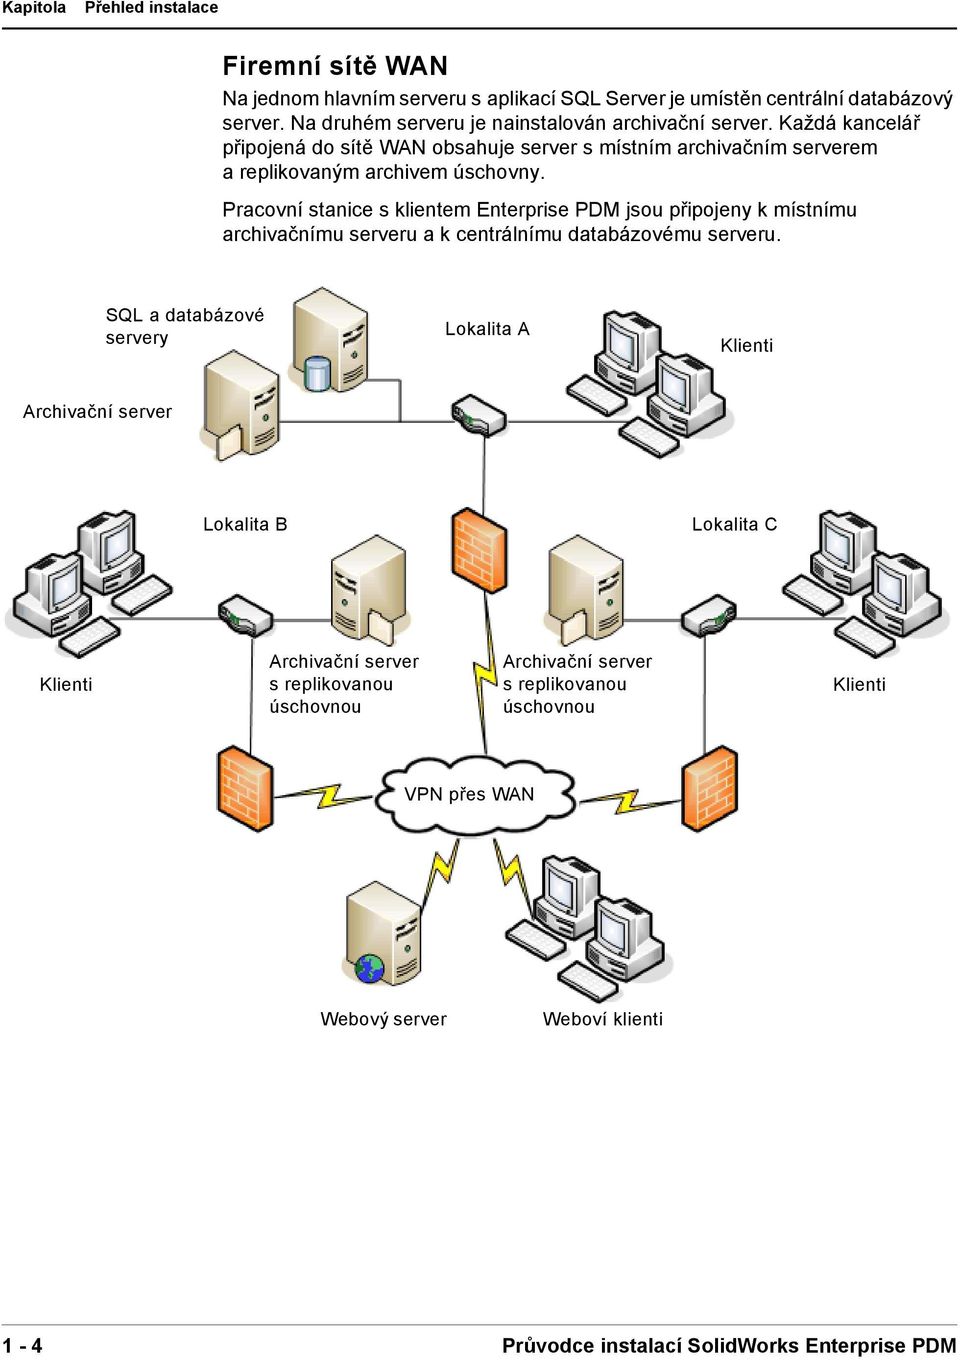 Pracovní stanice s klientem Enterprise PDM jsou připojeny k místnímu archivačnímu serveru a k centrálnímu databázovému serveru.